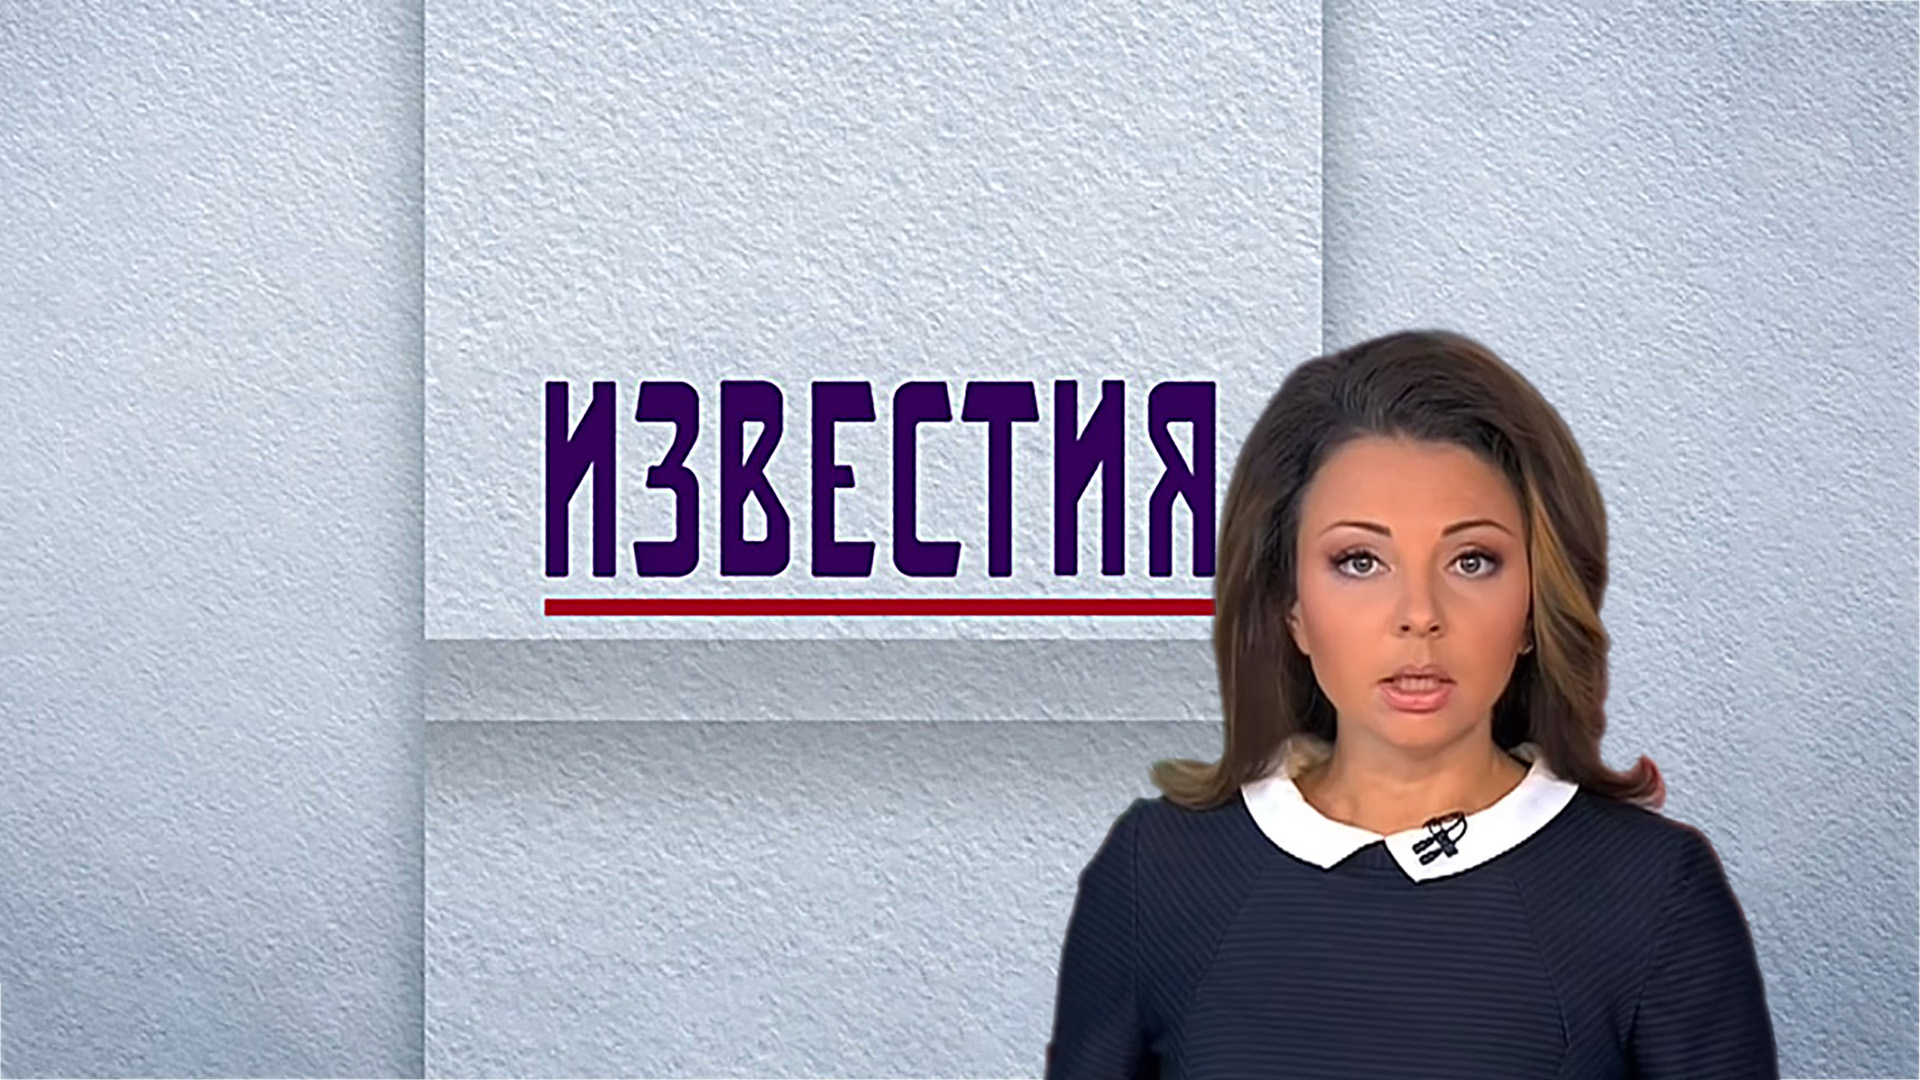 Ведущие пятого канала. Ведущая 5 канала Известия Канахович.